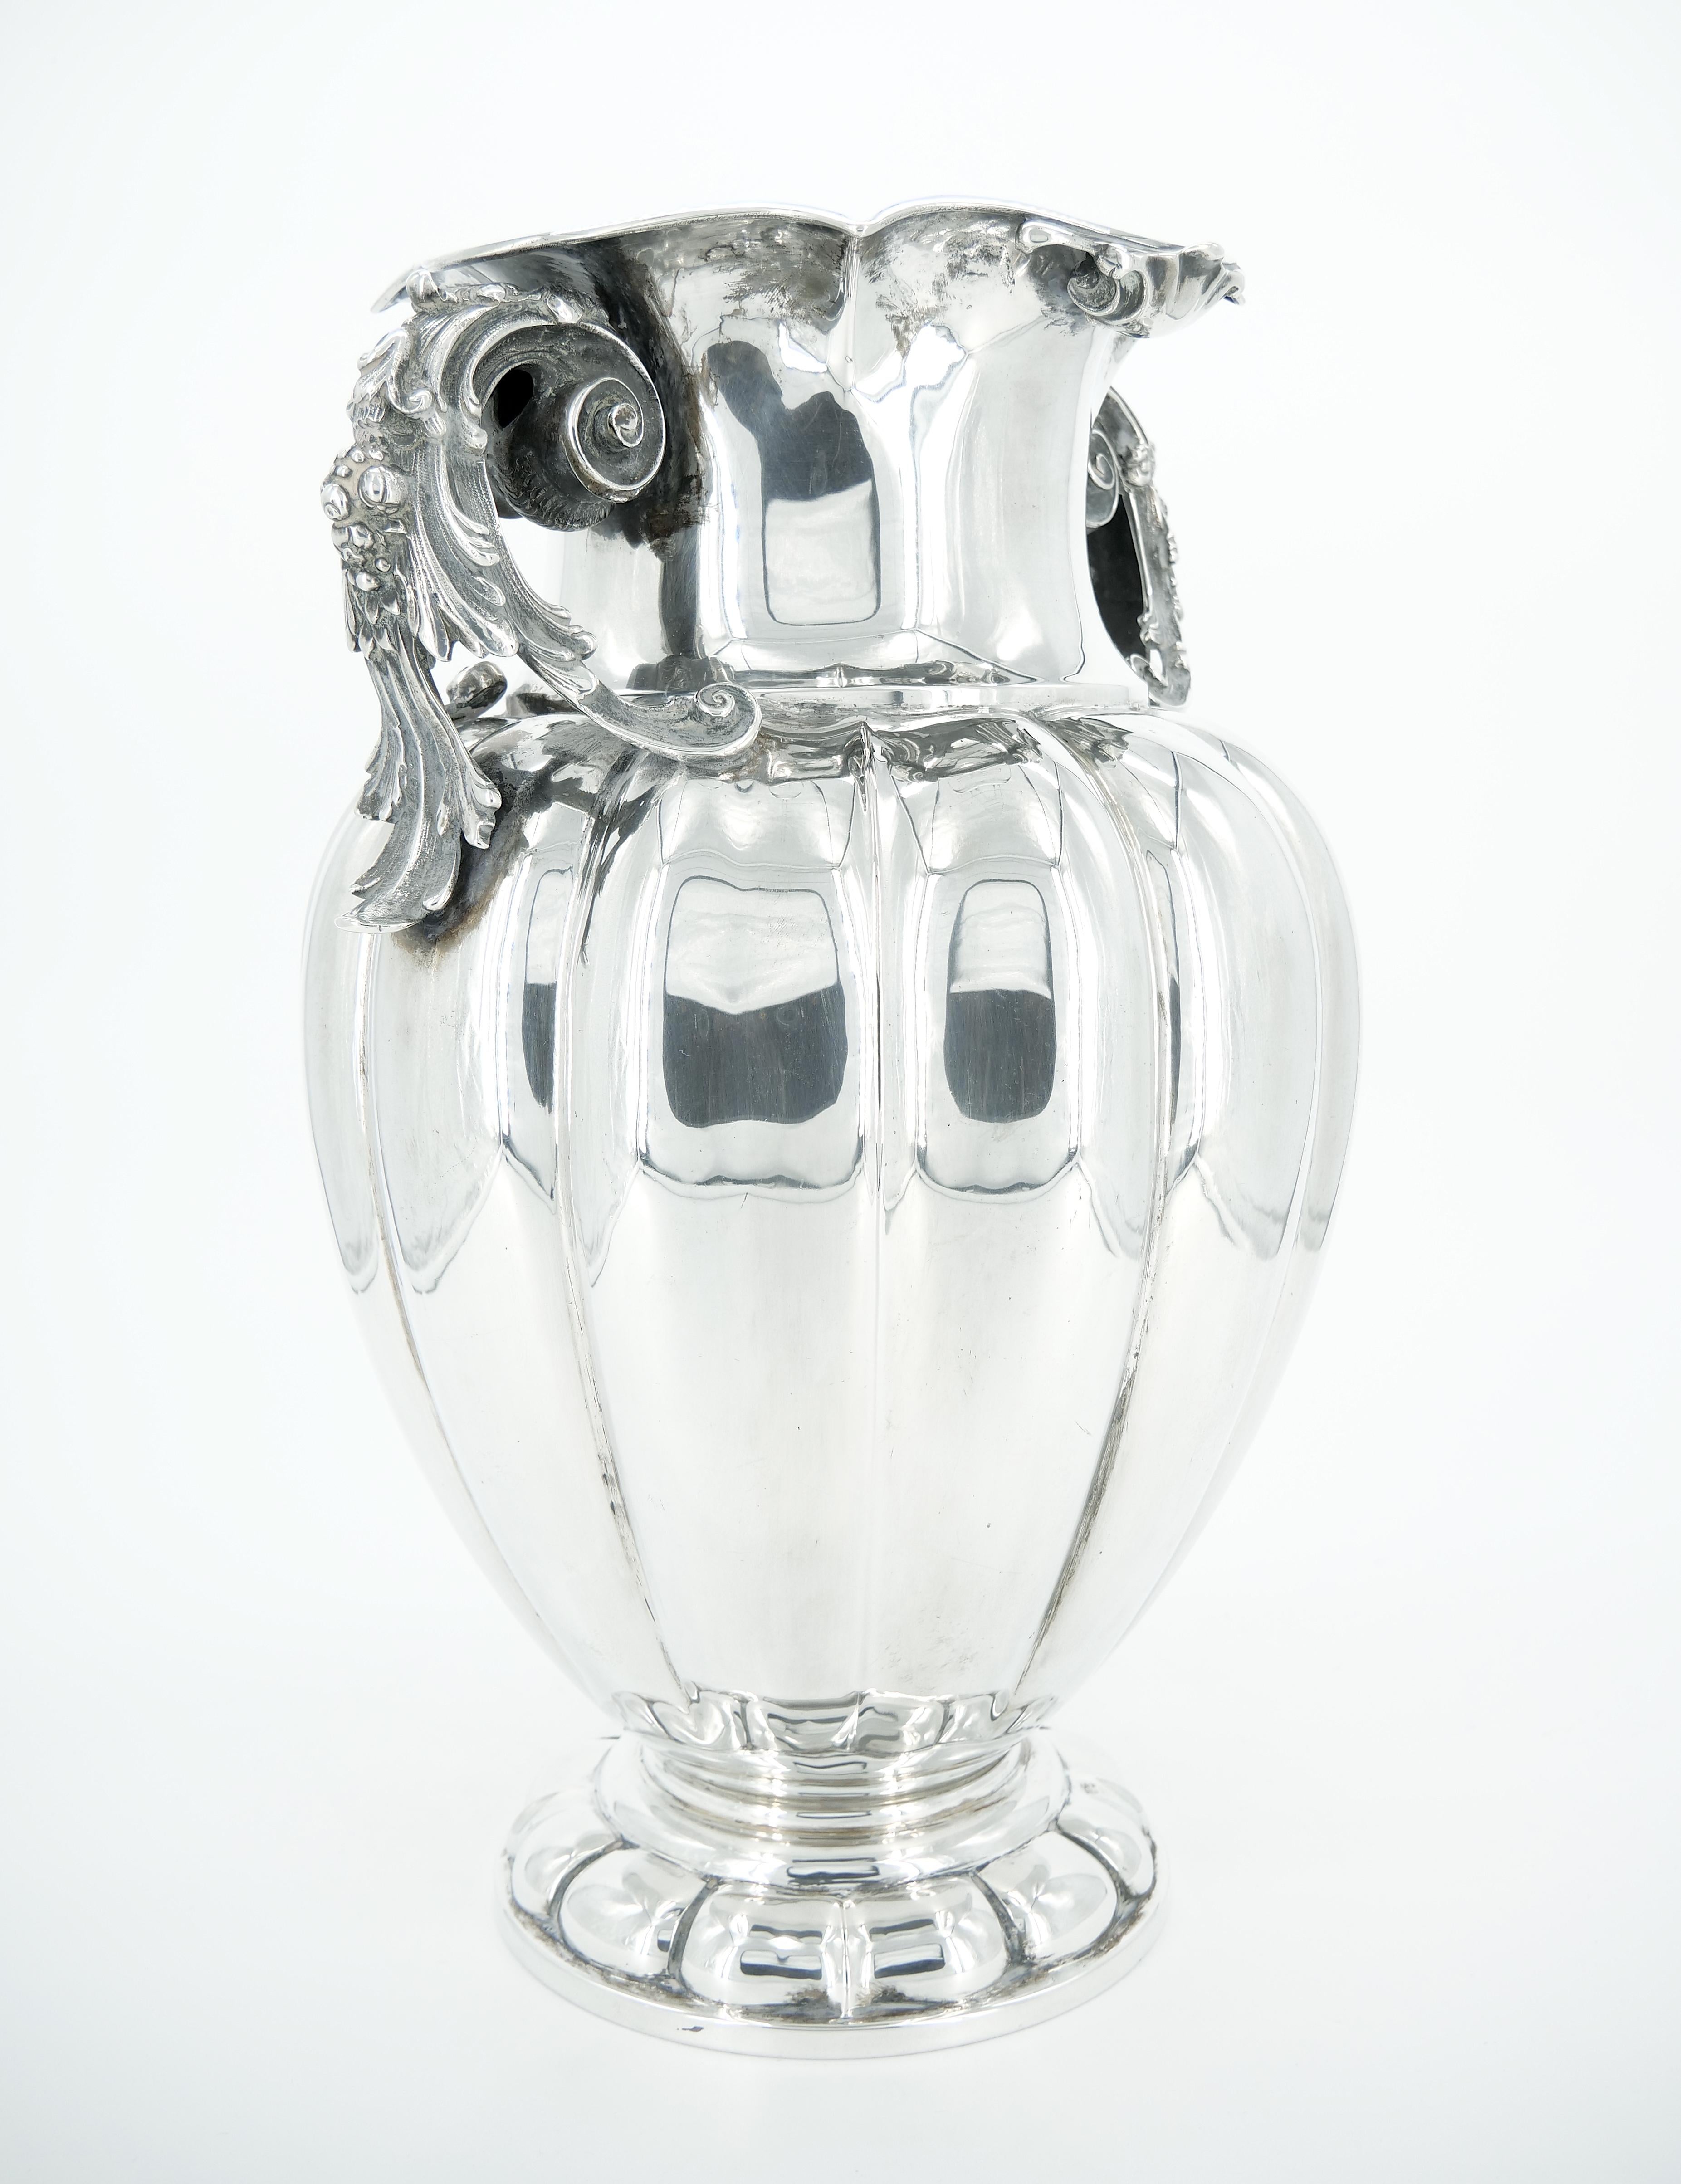 Wir präsentieren einen prächtigen Fund aus dem frühen 19. Jahrhundert - eine große italienische Sterling-Silber-Vase mit zwei Henkeln oder ein dekoratives Stück, ein Inbegriff von Grandeur und Handwerkskunst. Das Äußere dieses bemerkenswerten Stücks